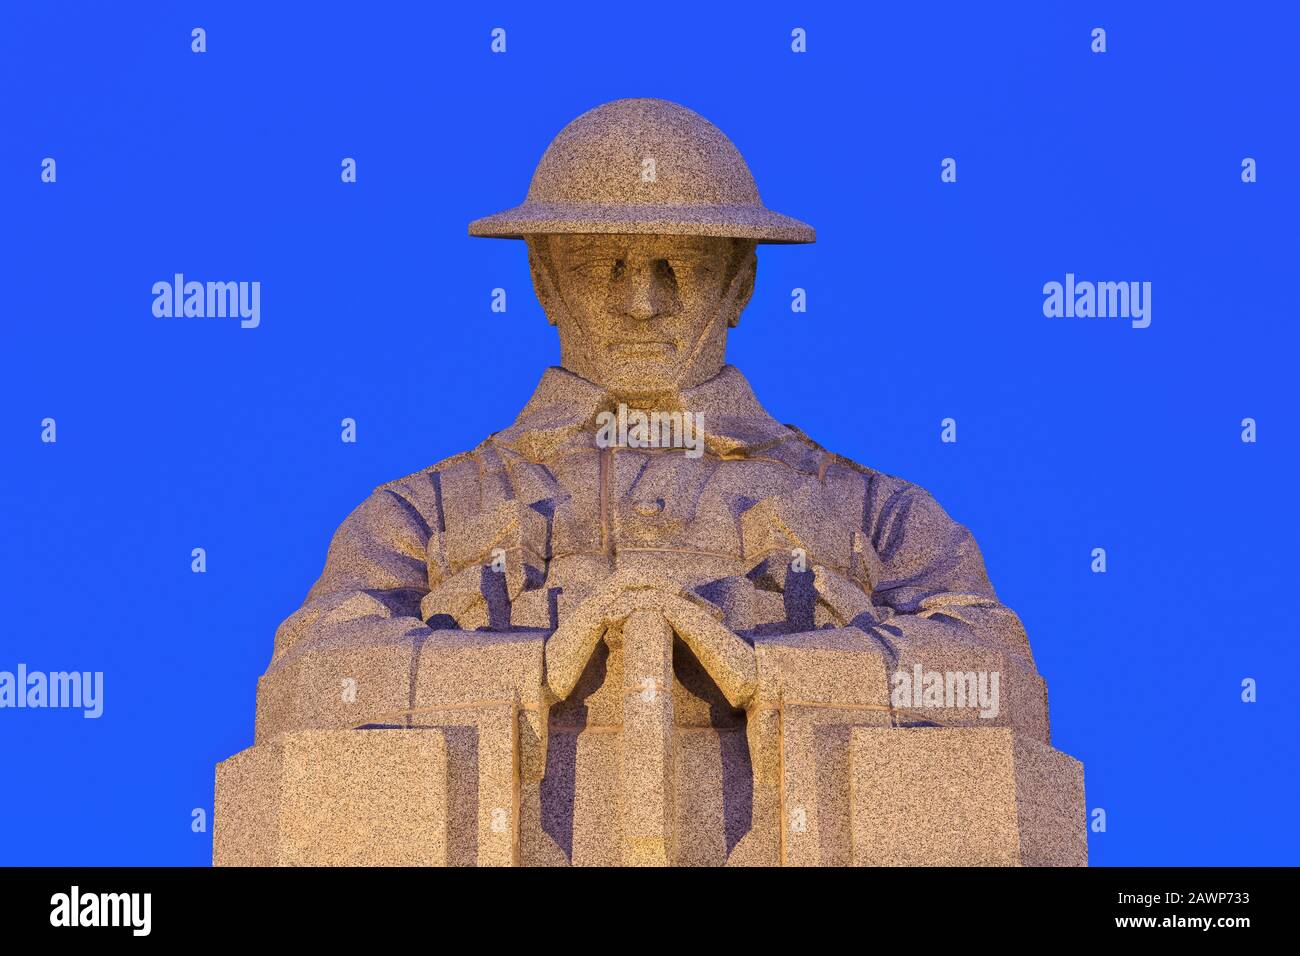 Le mémorial du soldat De Couvaison au Mémorial Saint Julien marquant les premières attaques de gaz allemandes du 22 au 24 avril 1915 à Langemark-Poelkapelle, Belgique Banque D'Images